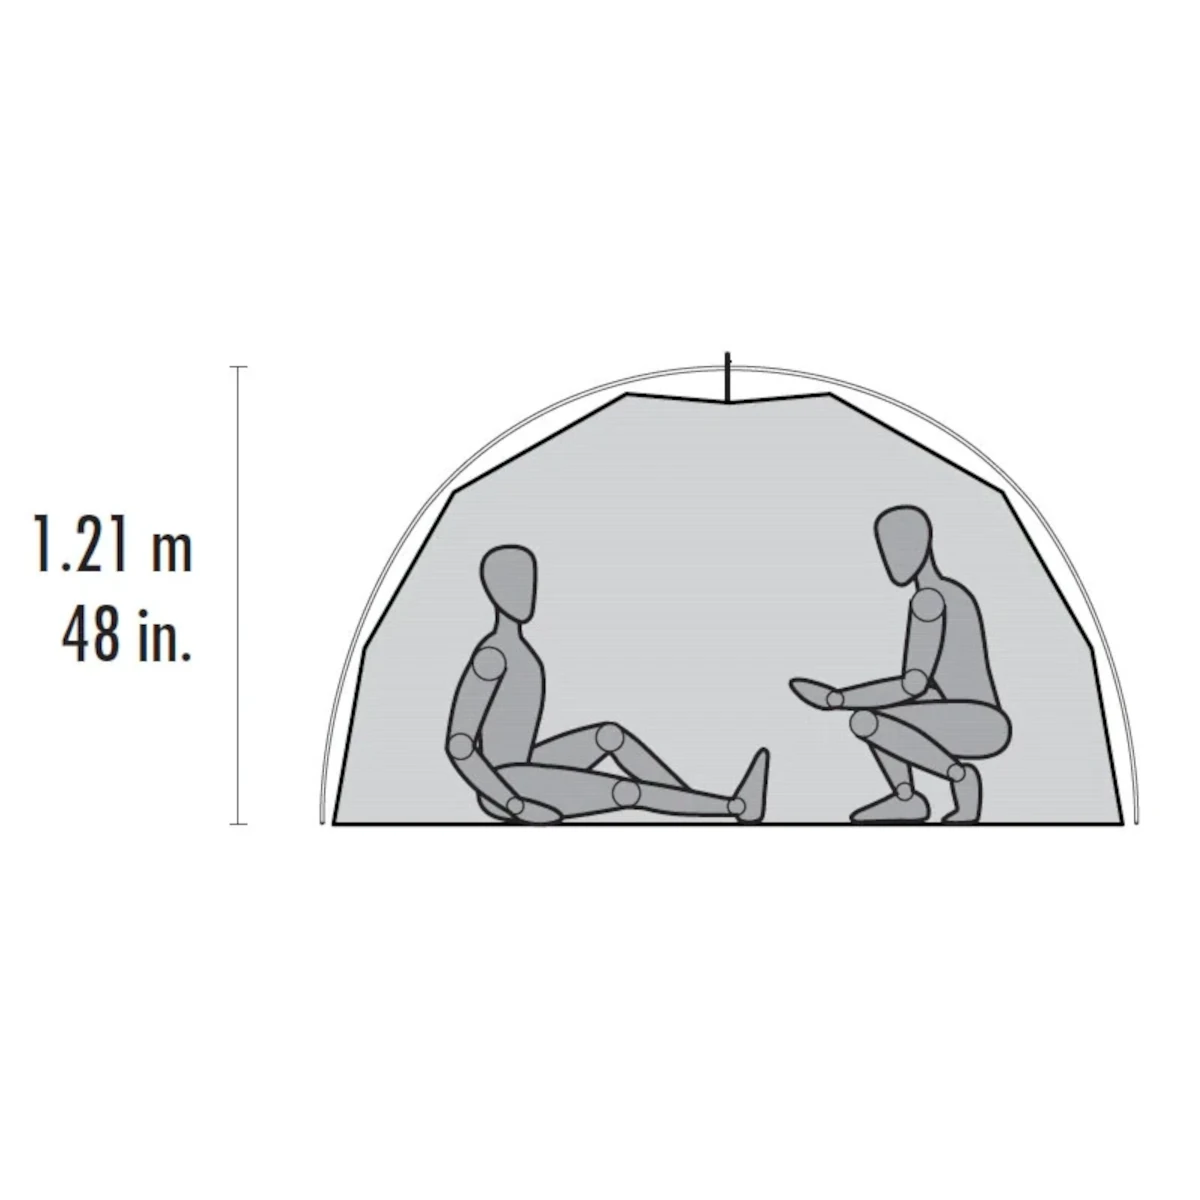 MSR Elixir 4 Tent-camping tent